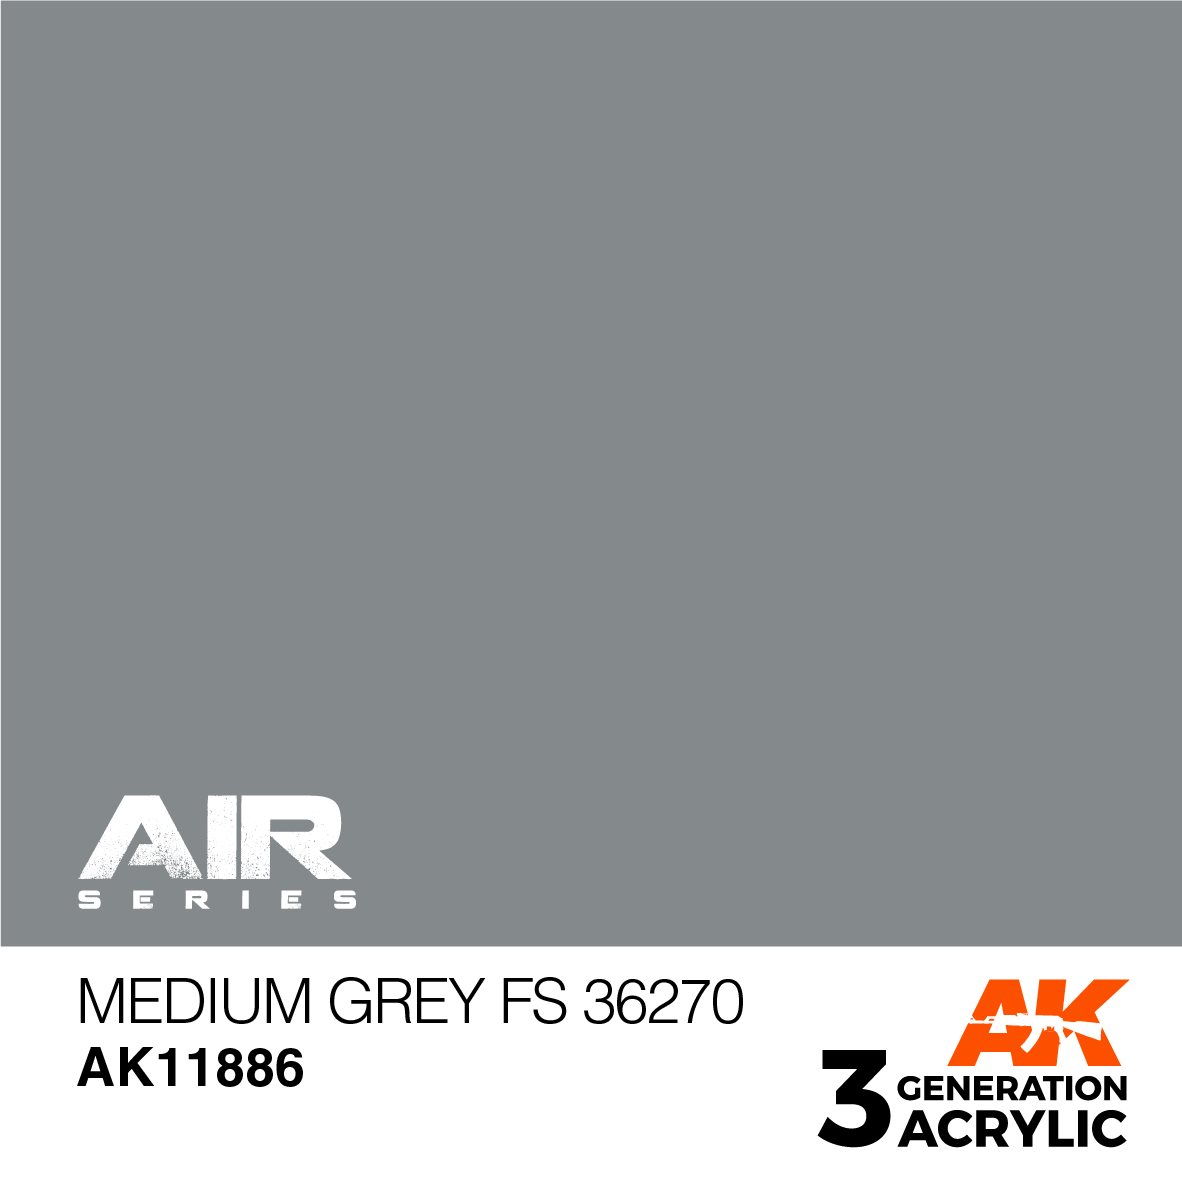 AK Interactive AK12003 Plastic Cement Standard Density